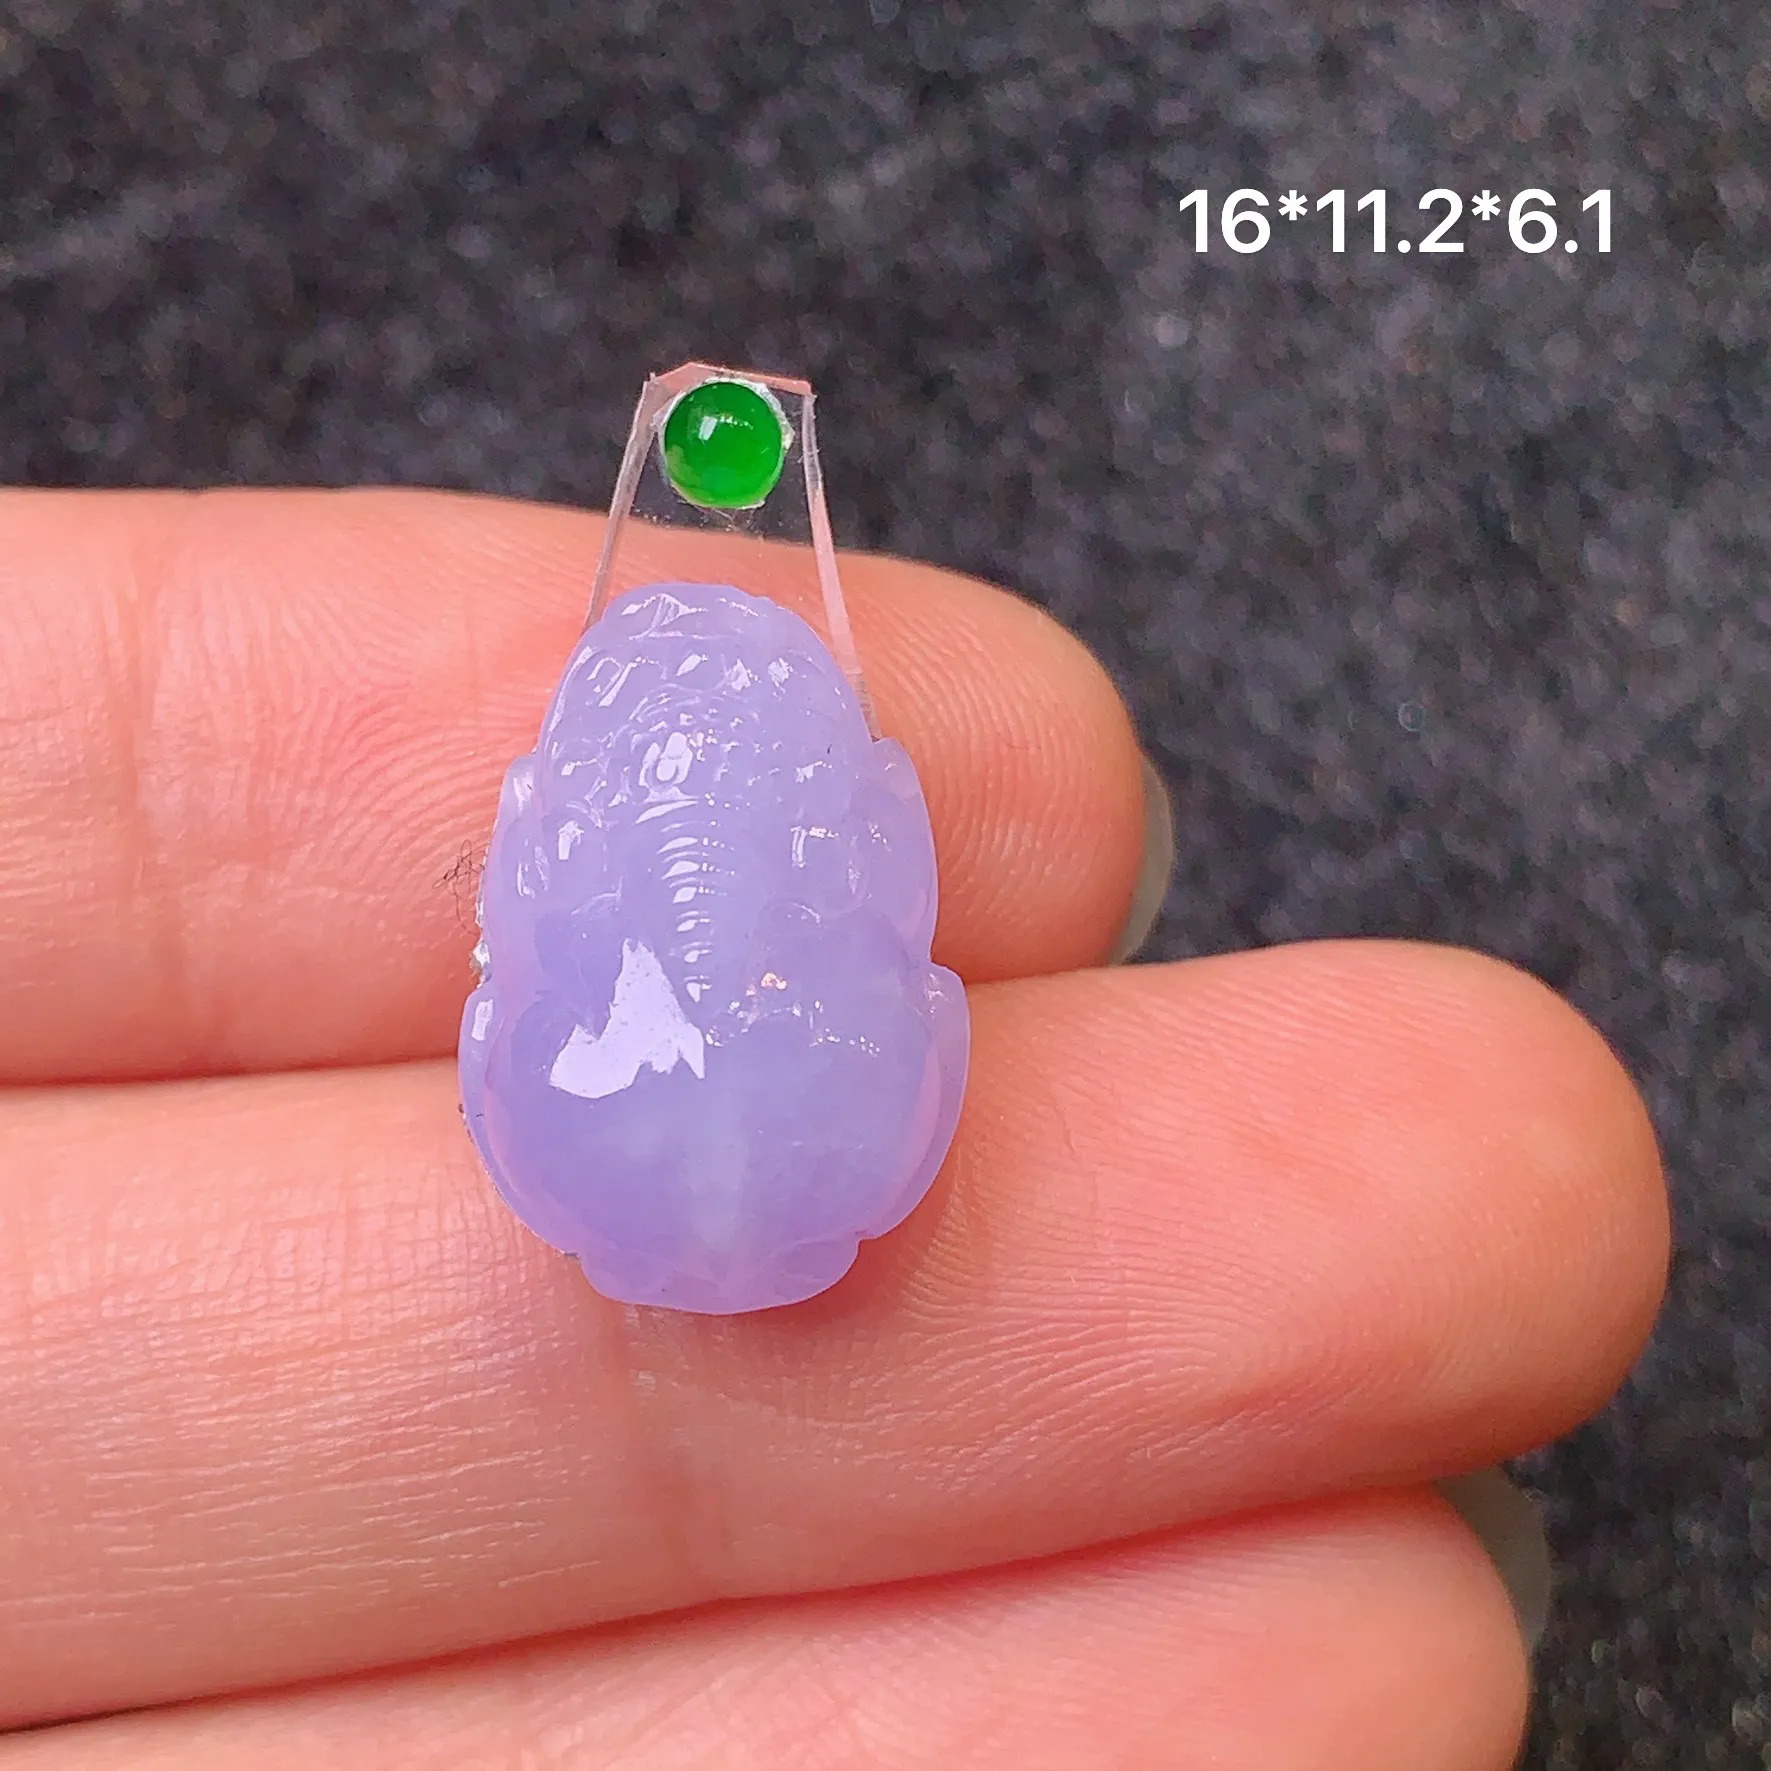 镶嵌款 紫罗兰貔貅 玉质细腻 水润透亮 色泽艳丽 搭配绿色小蛋面 整体尺寸16*11.2*6.1